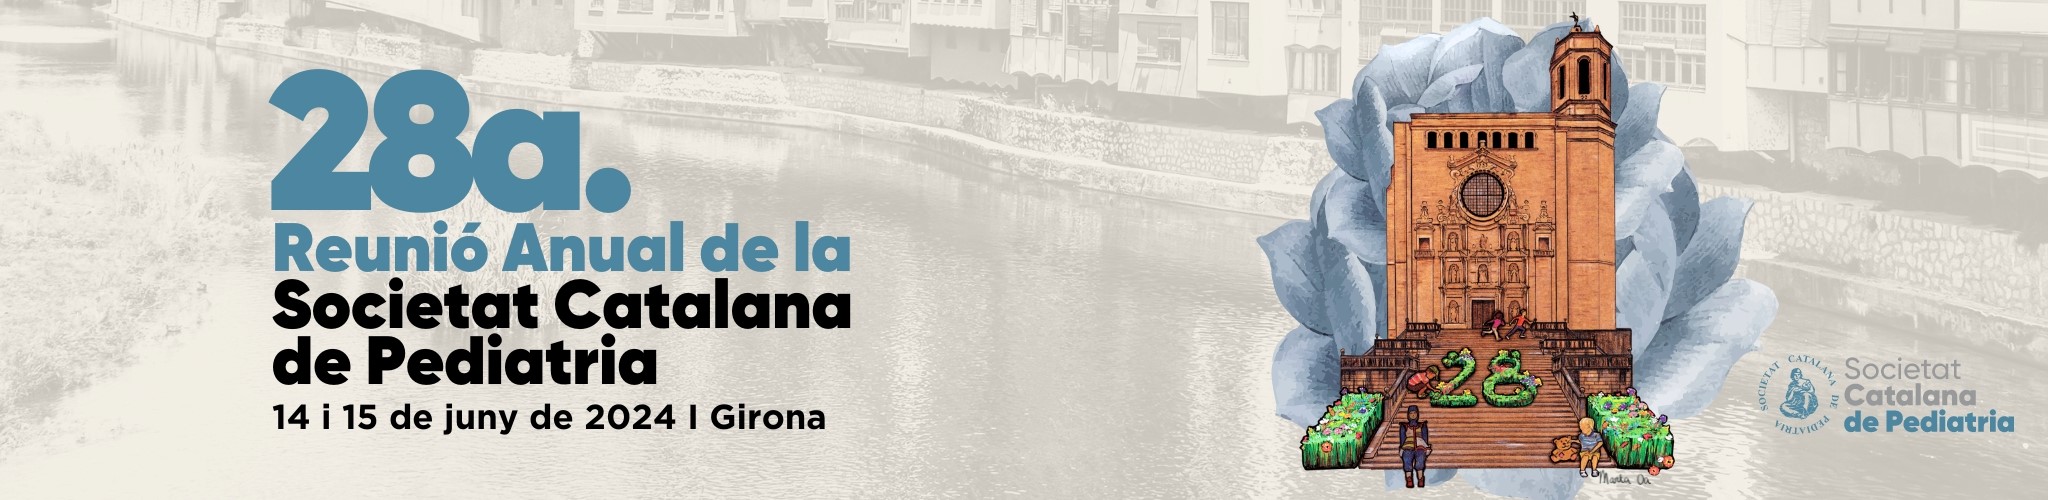 28 Reunió Anual de la Societat Catalana de Pediatria